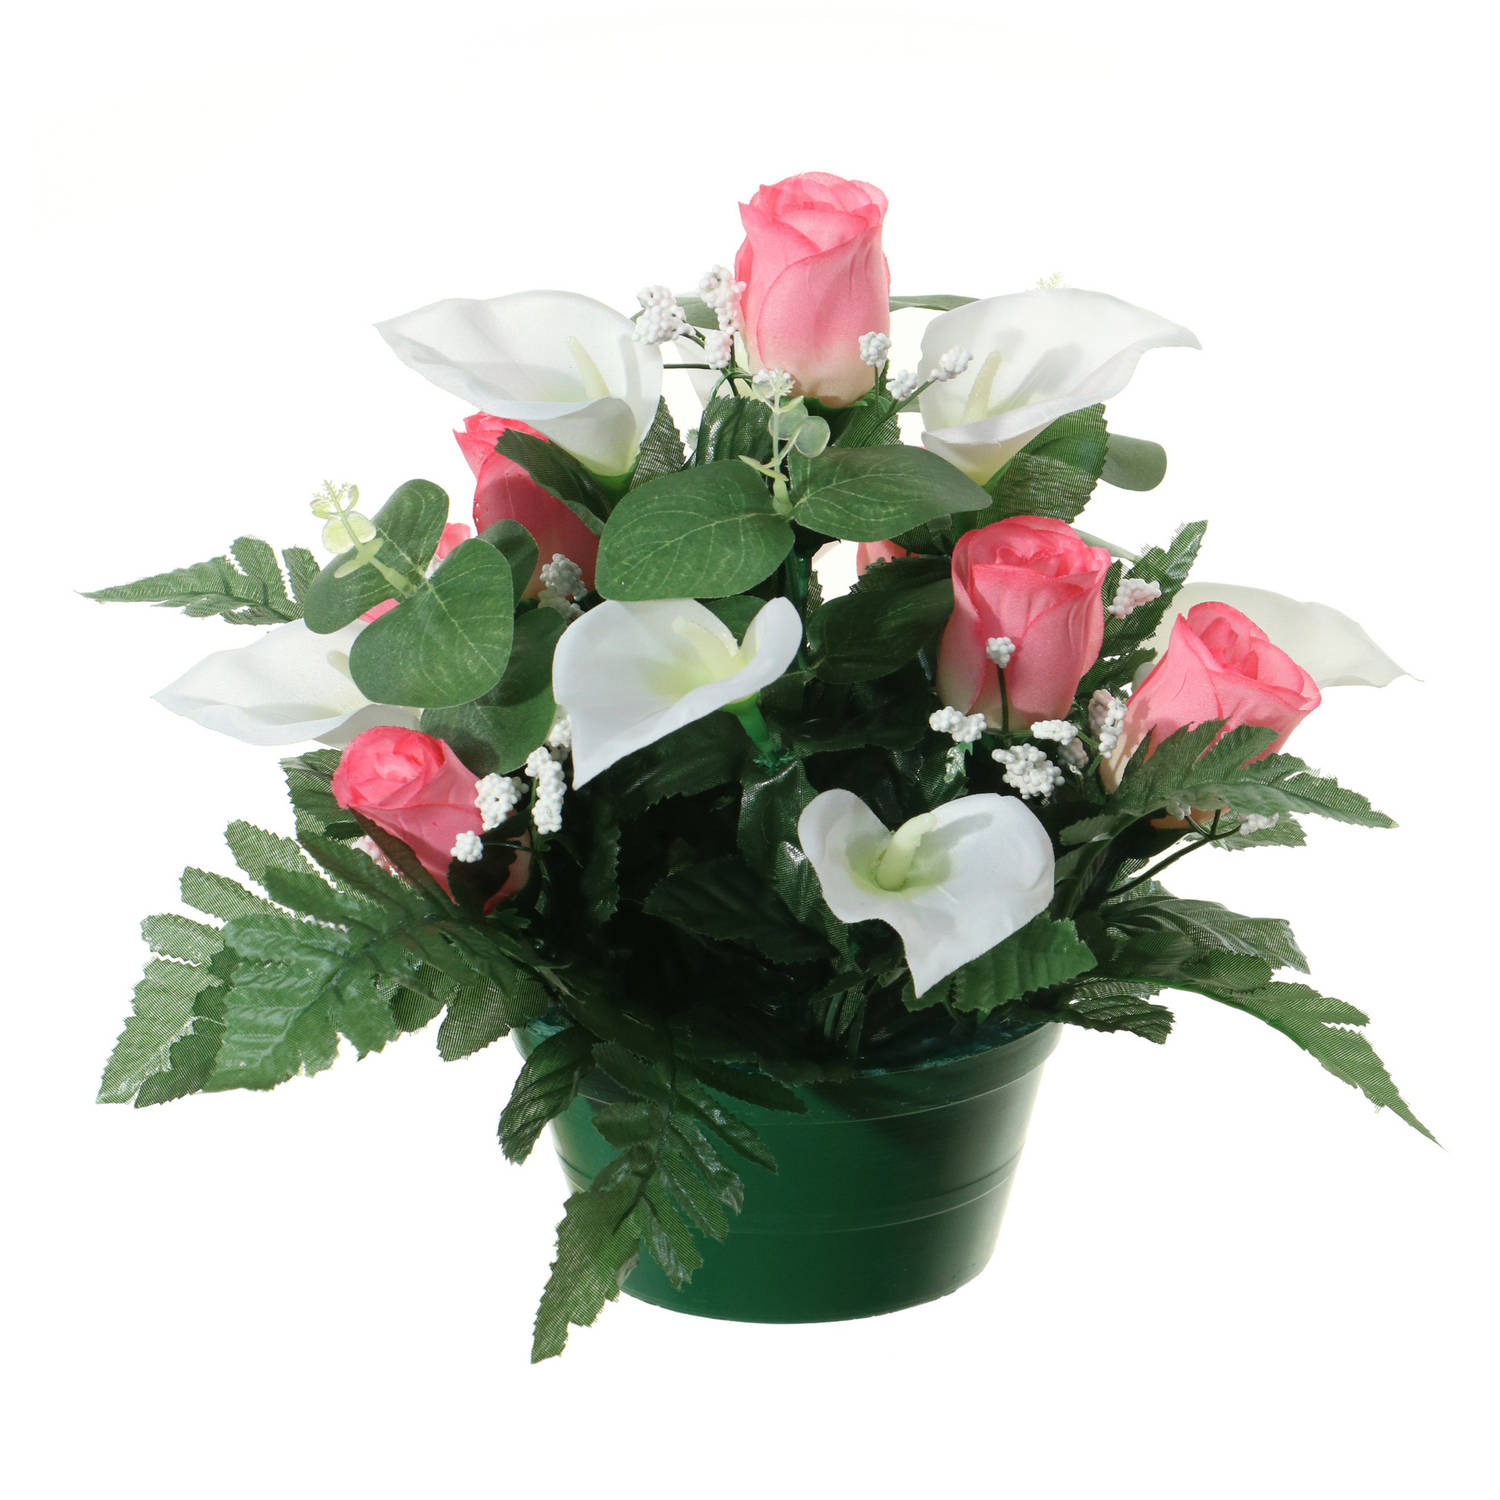 Louis Maes Kunstbloemen plantje in pot - wit/roze - 26 cm - Bloemstuk ornament - rozen met bladgroen